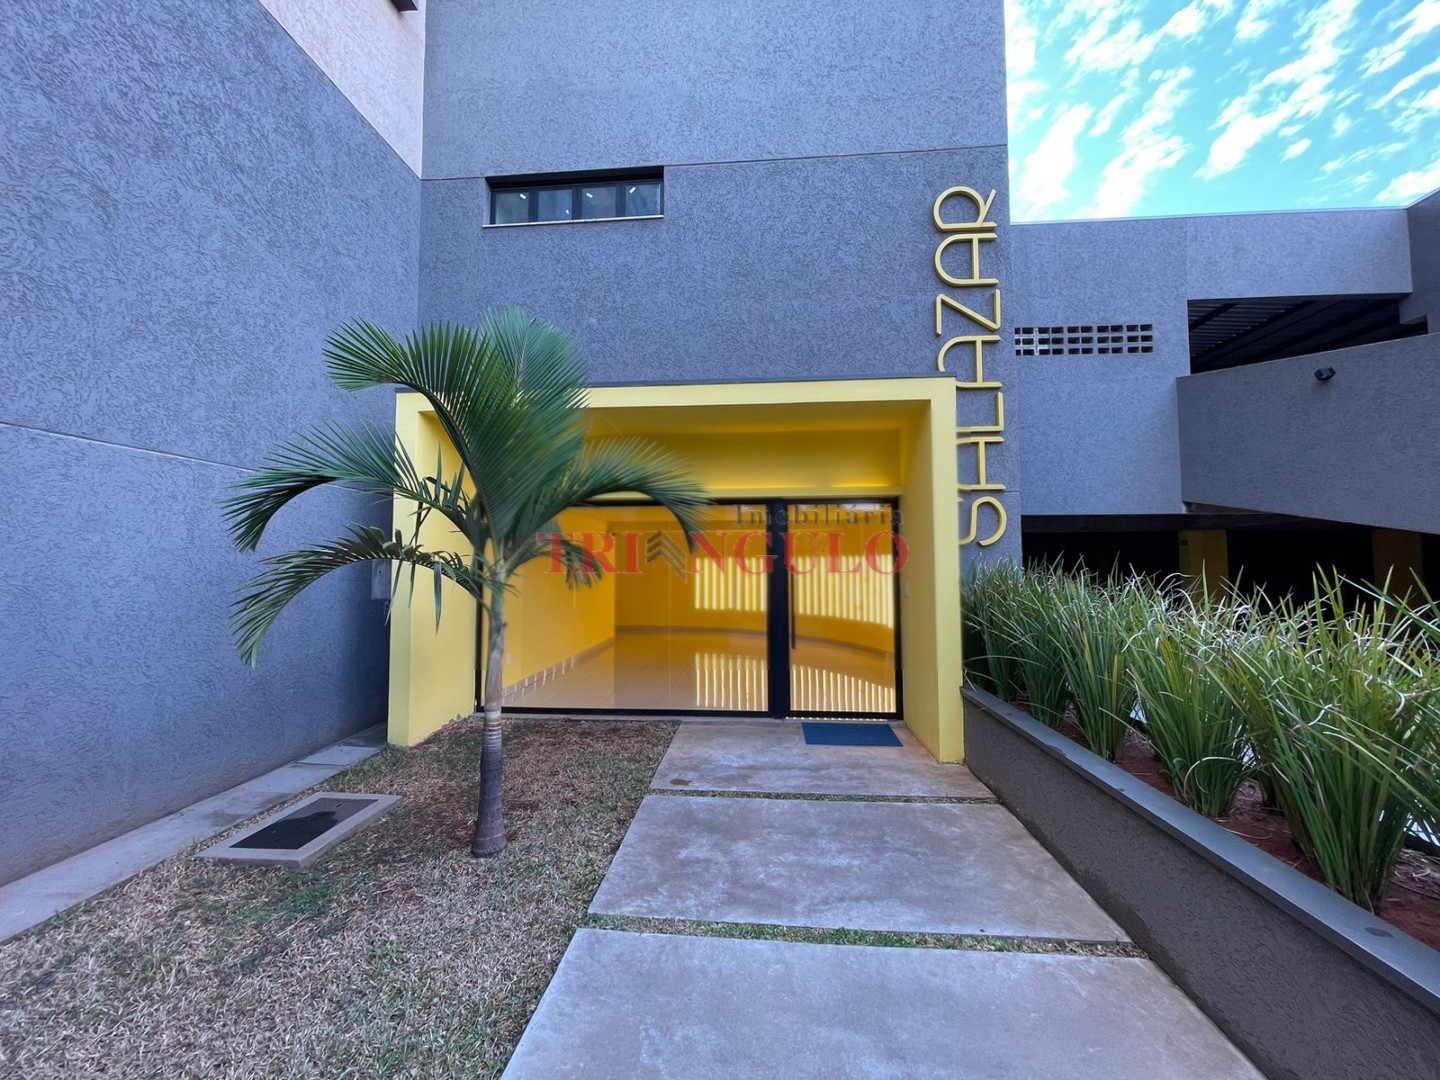 Apartamento para locacao no Zona III em Umuarama com 83,16m² por R$ 1.200,00